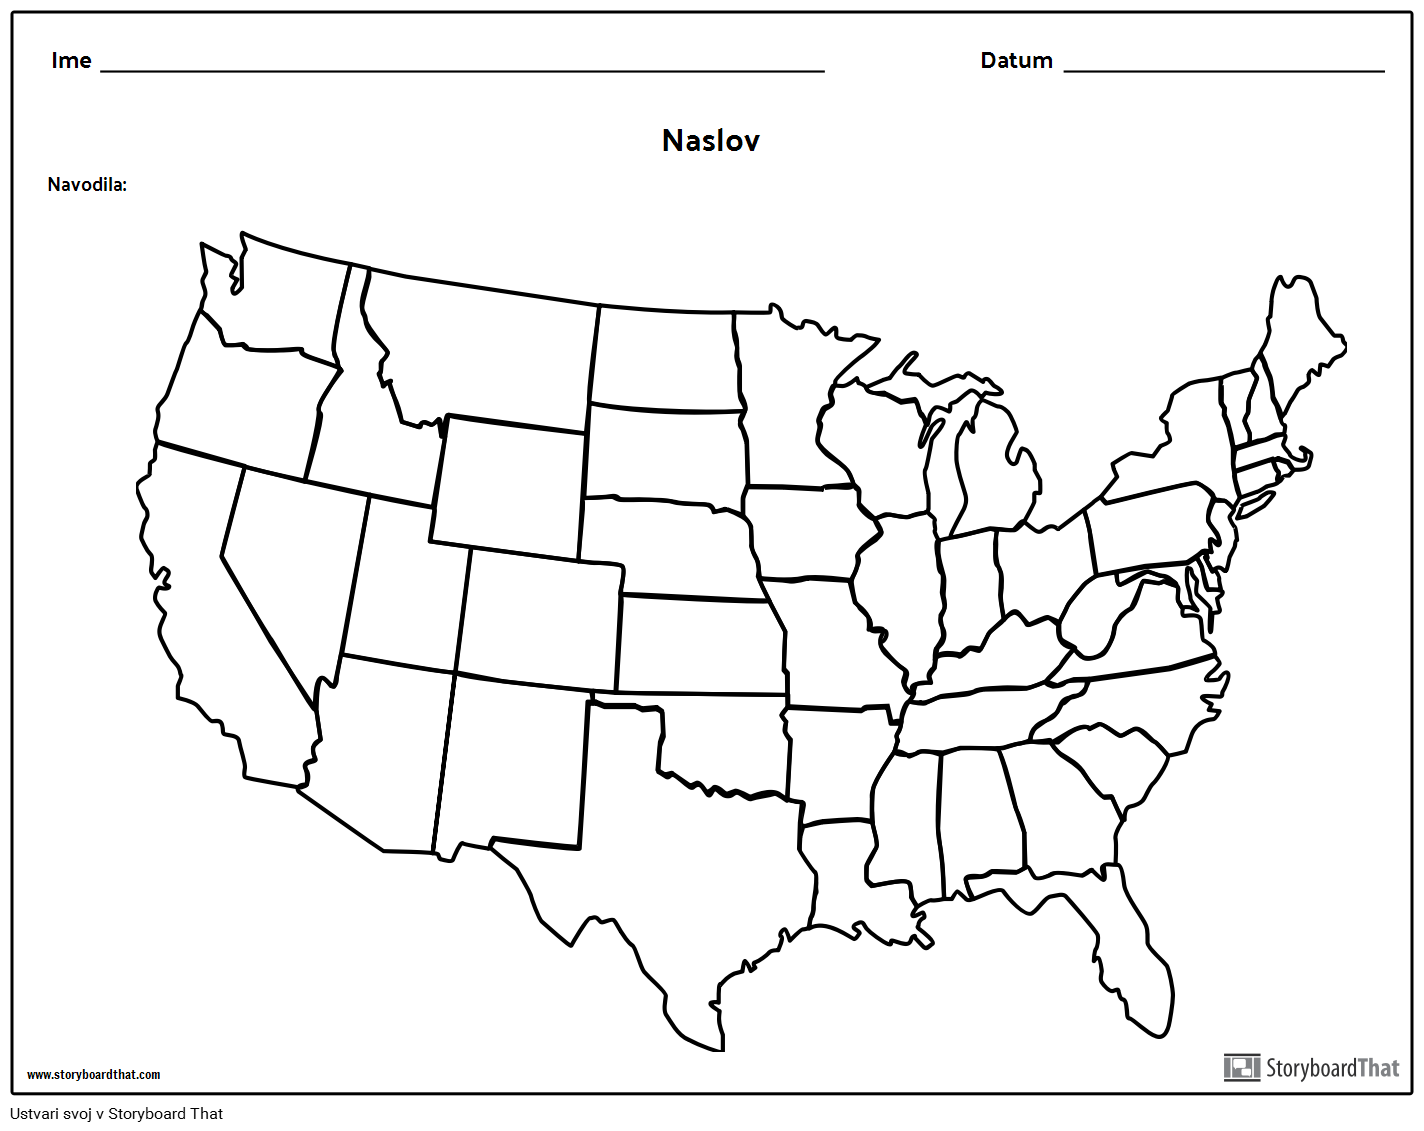 Zemljevid Združenih Držav